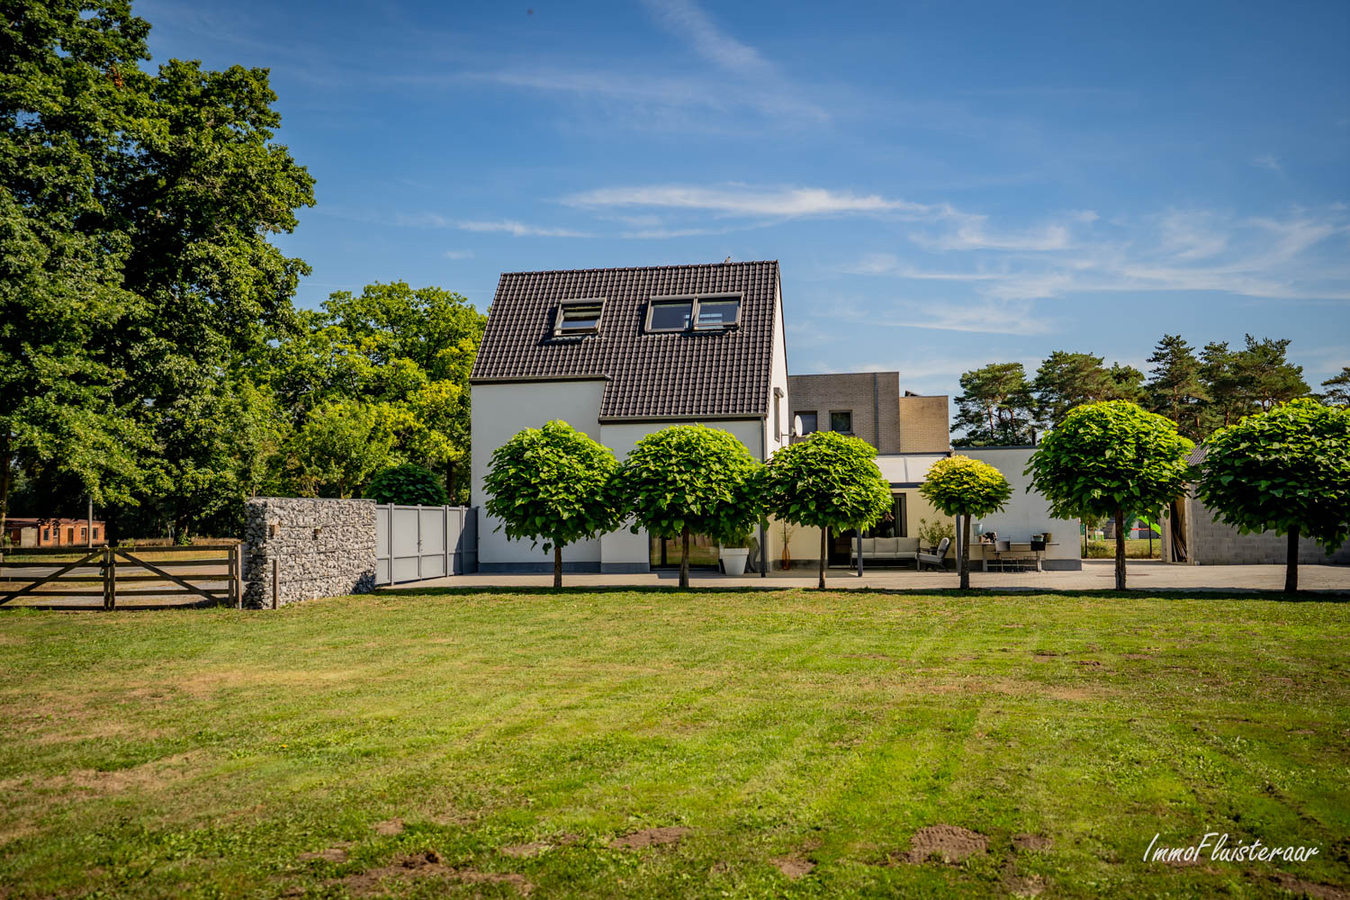 Property sold in Wijshagen